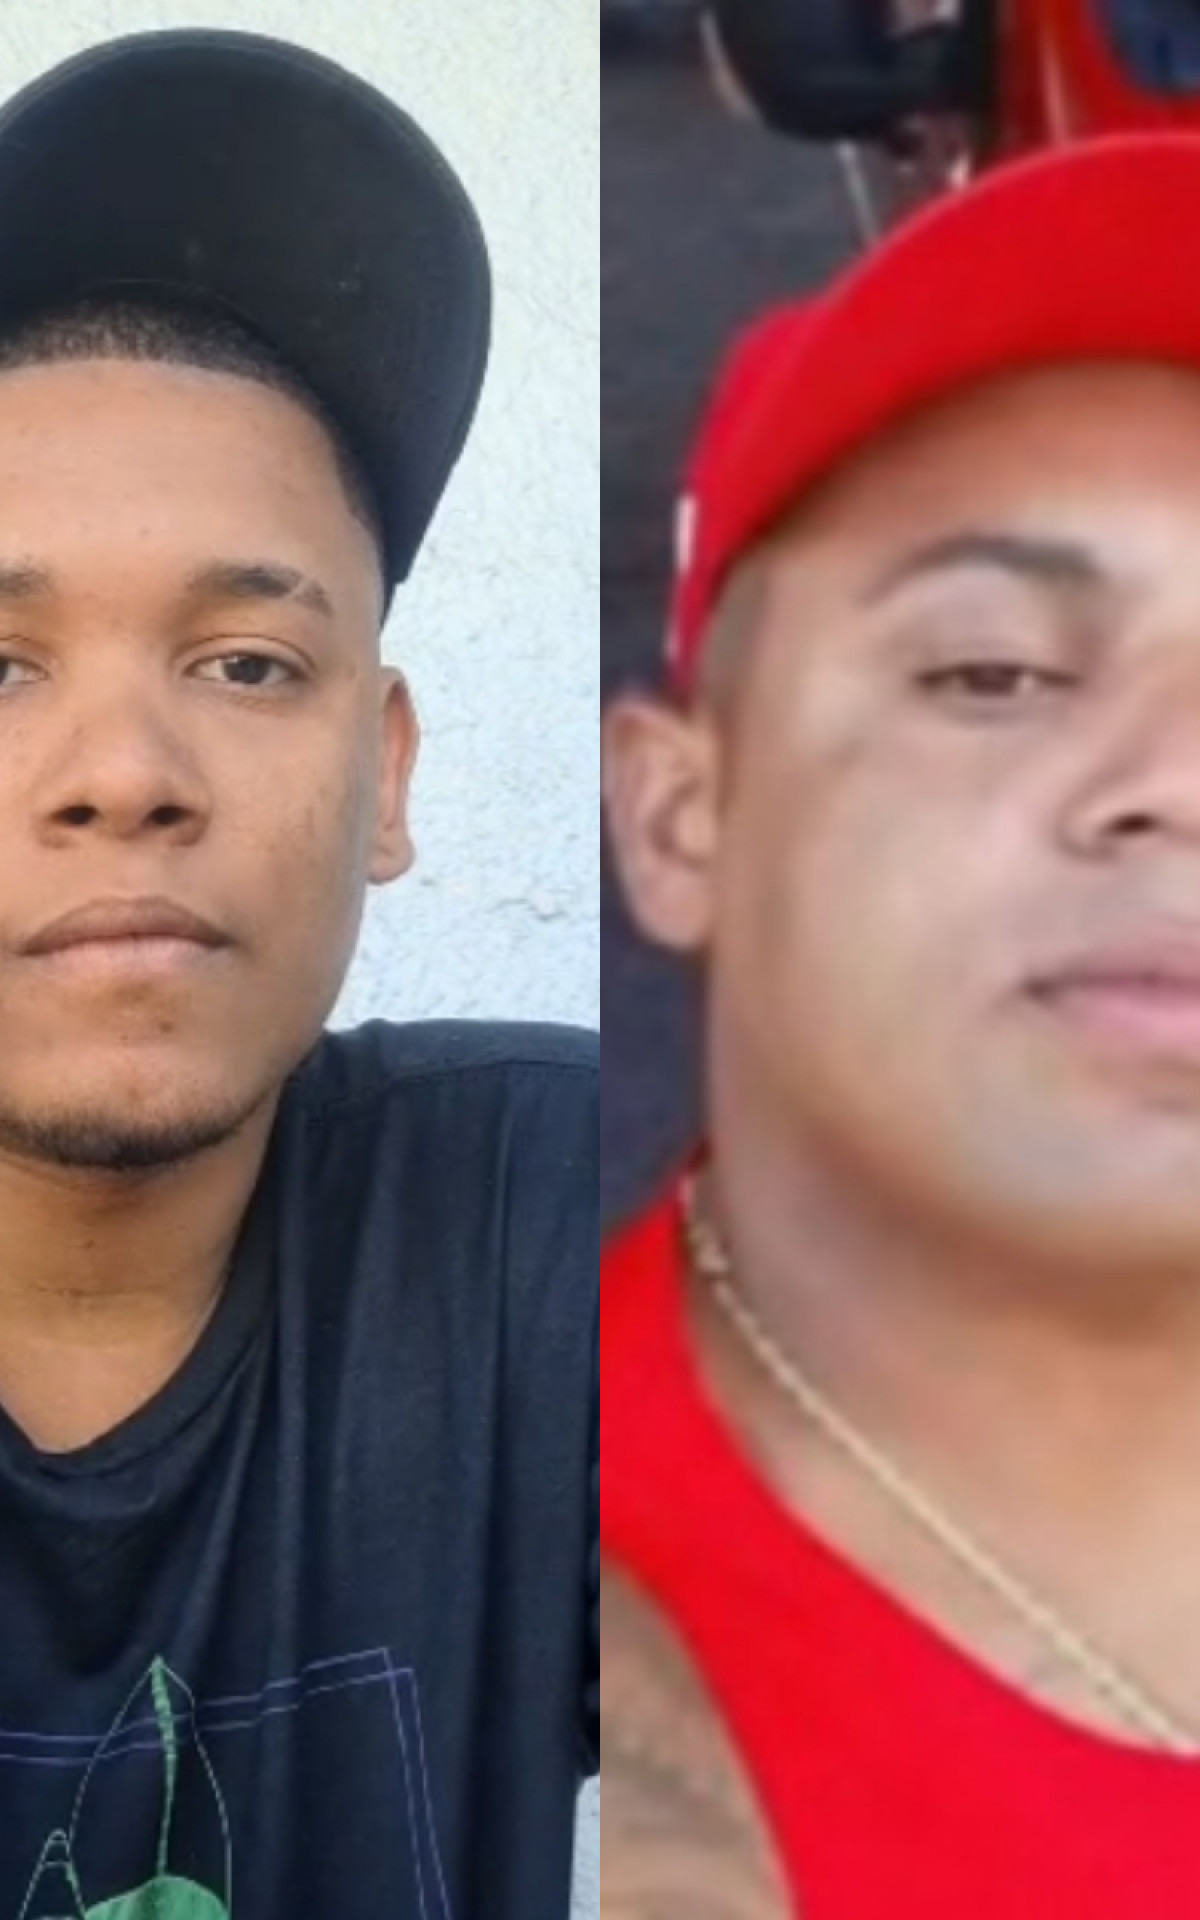 Atendente Mateus Domingo Carvalho foi baleado pelo bombeiro Paulo César de Souza Albuquerque no McDonald's da Taquara - Reprodução